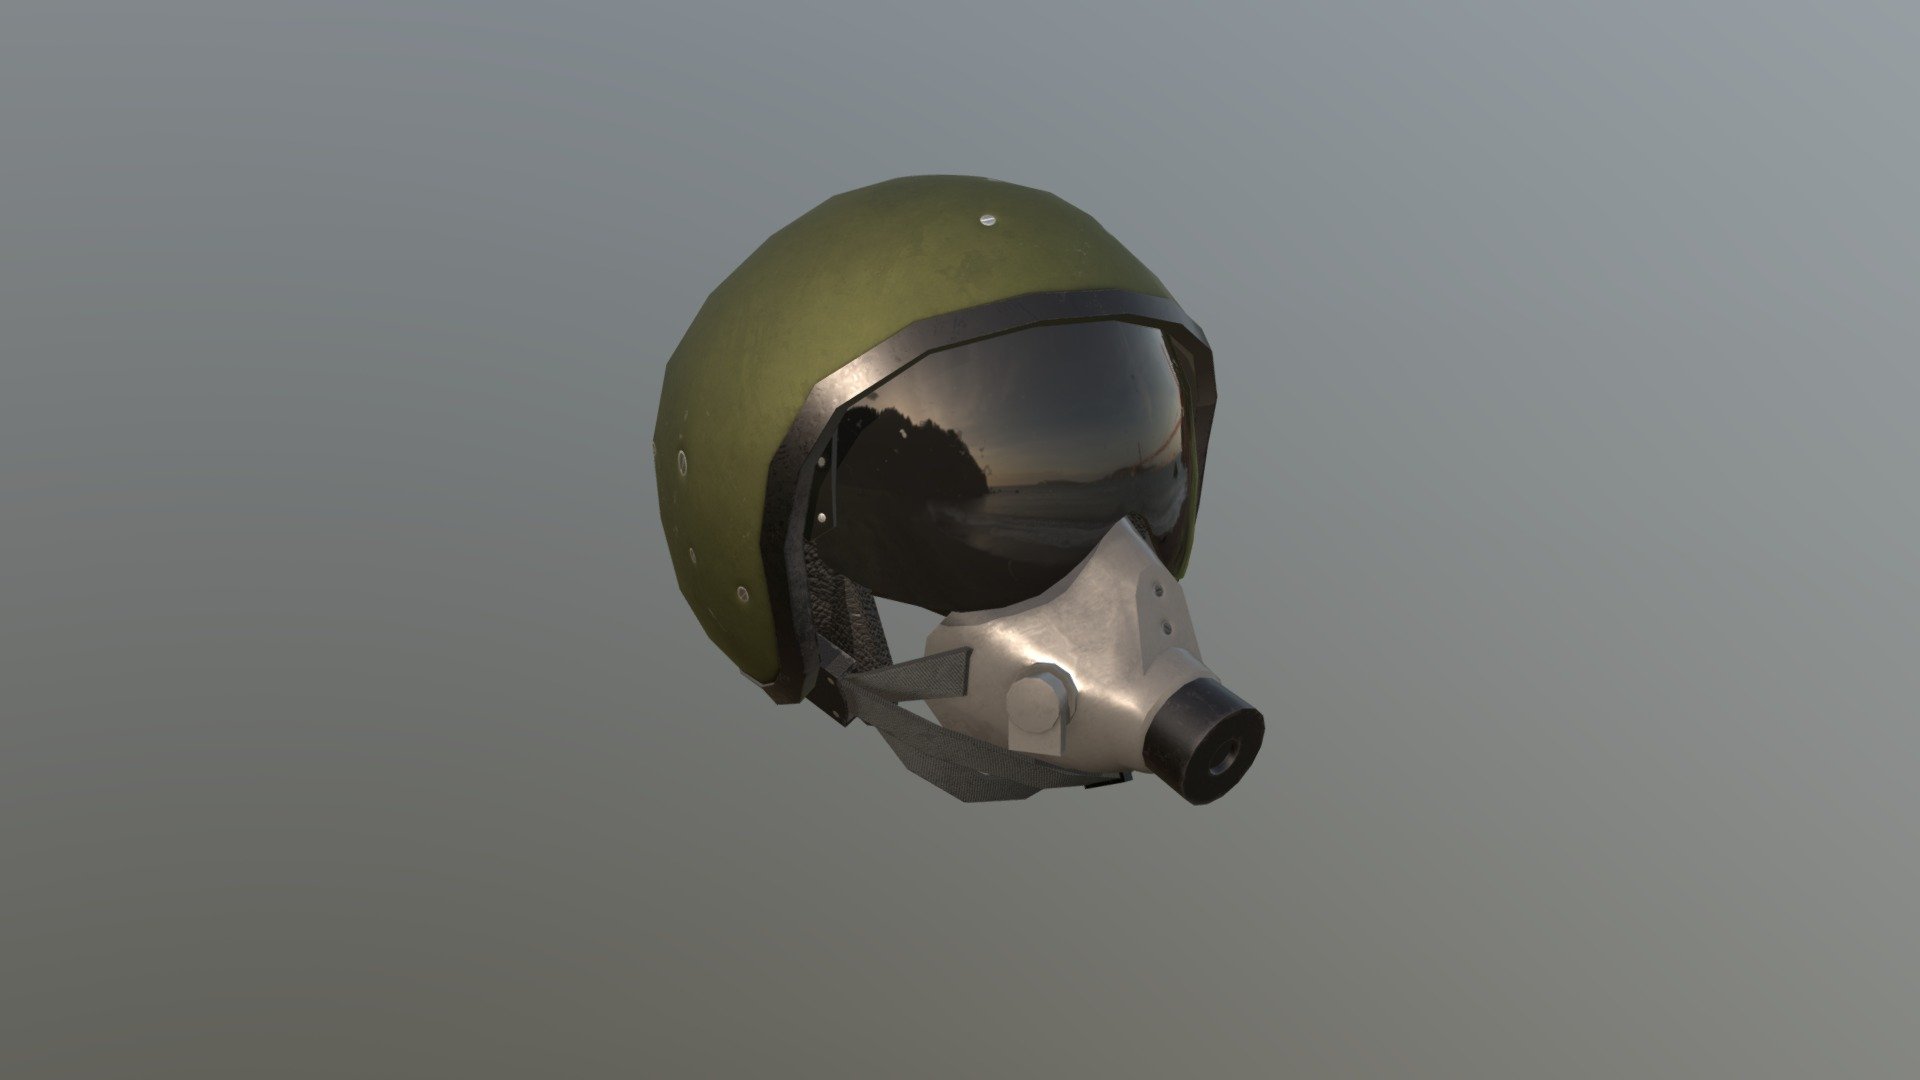 Low-poly 3D-model of the pilot's helmet - Flight helmet - 3D model by jelly_gecko 3d model